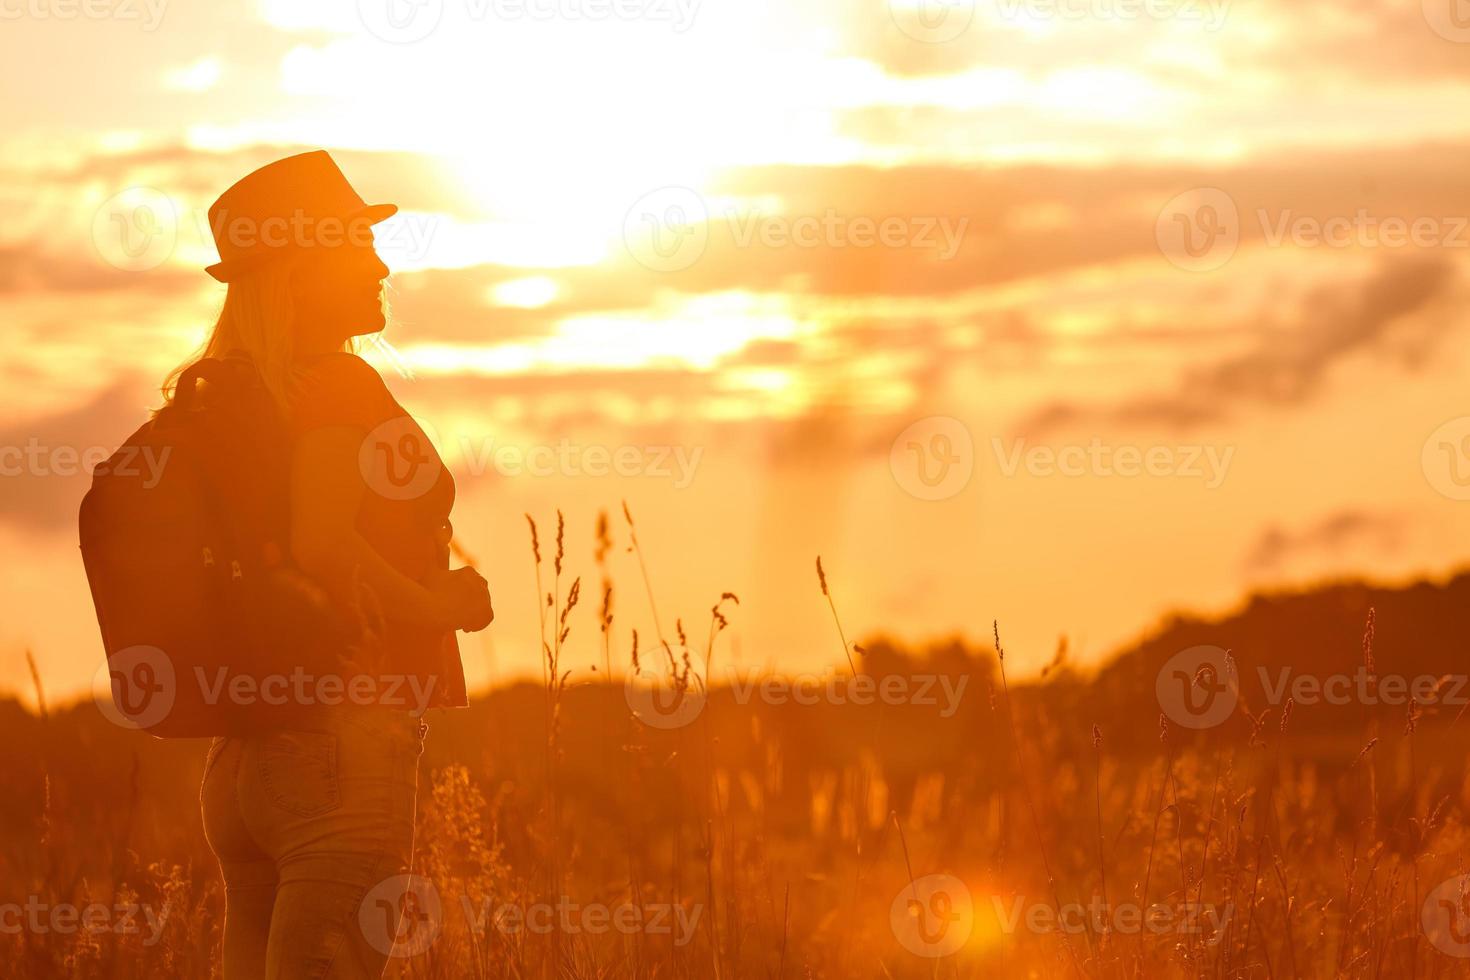 silueta de mujer esperando el sol de verano en la pradera foto